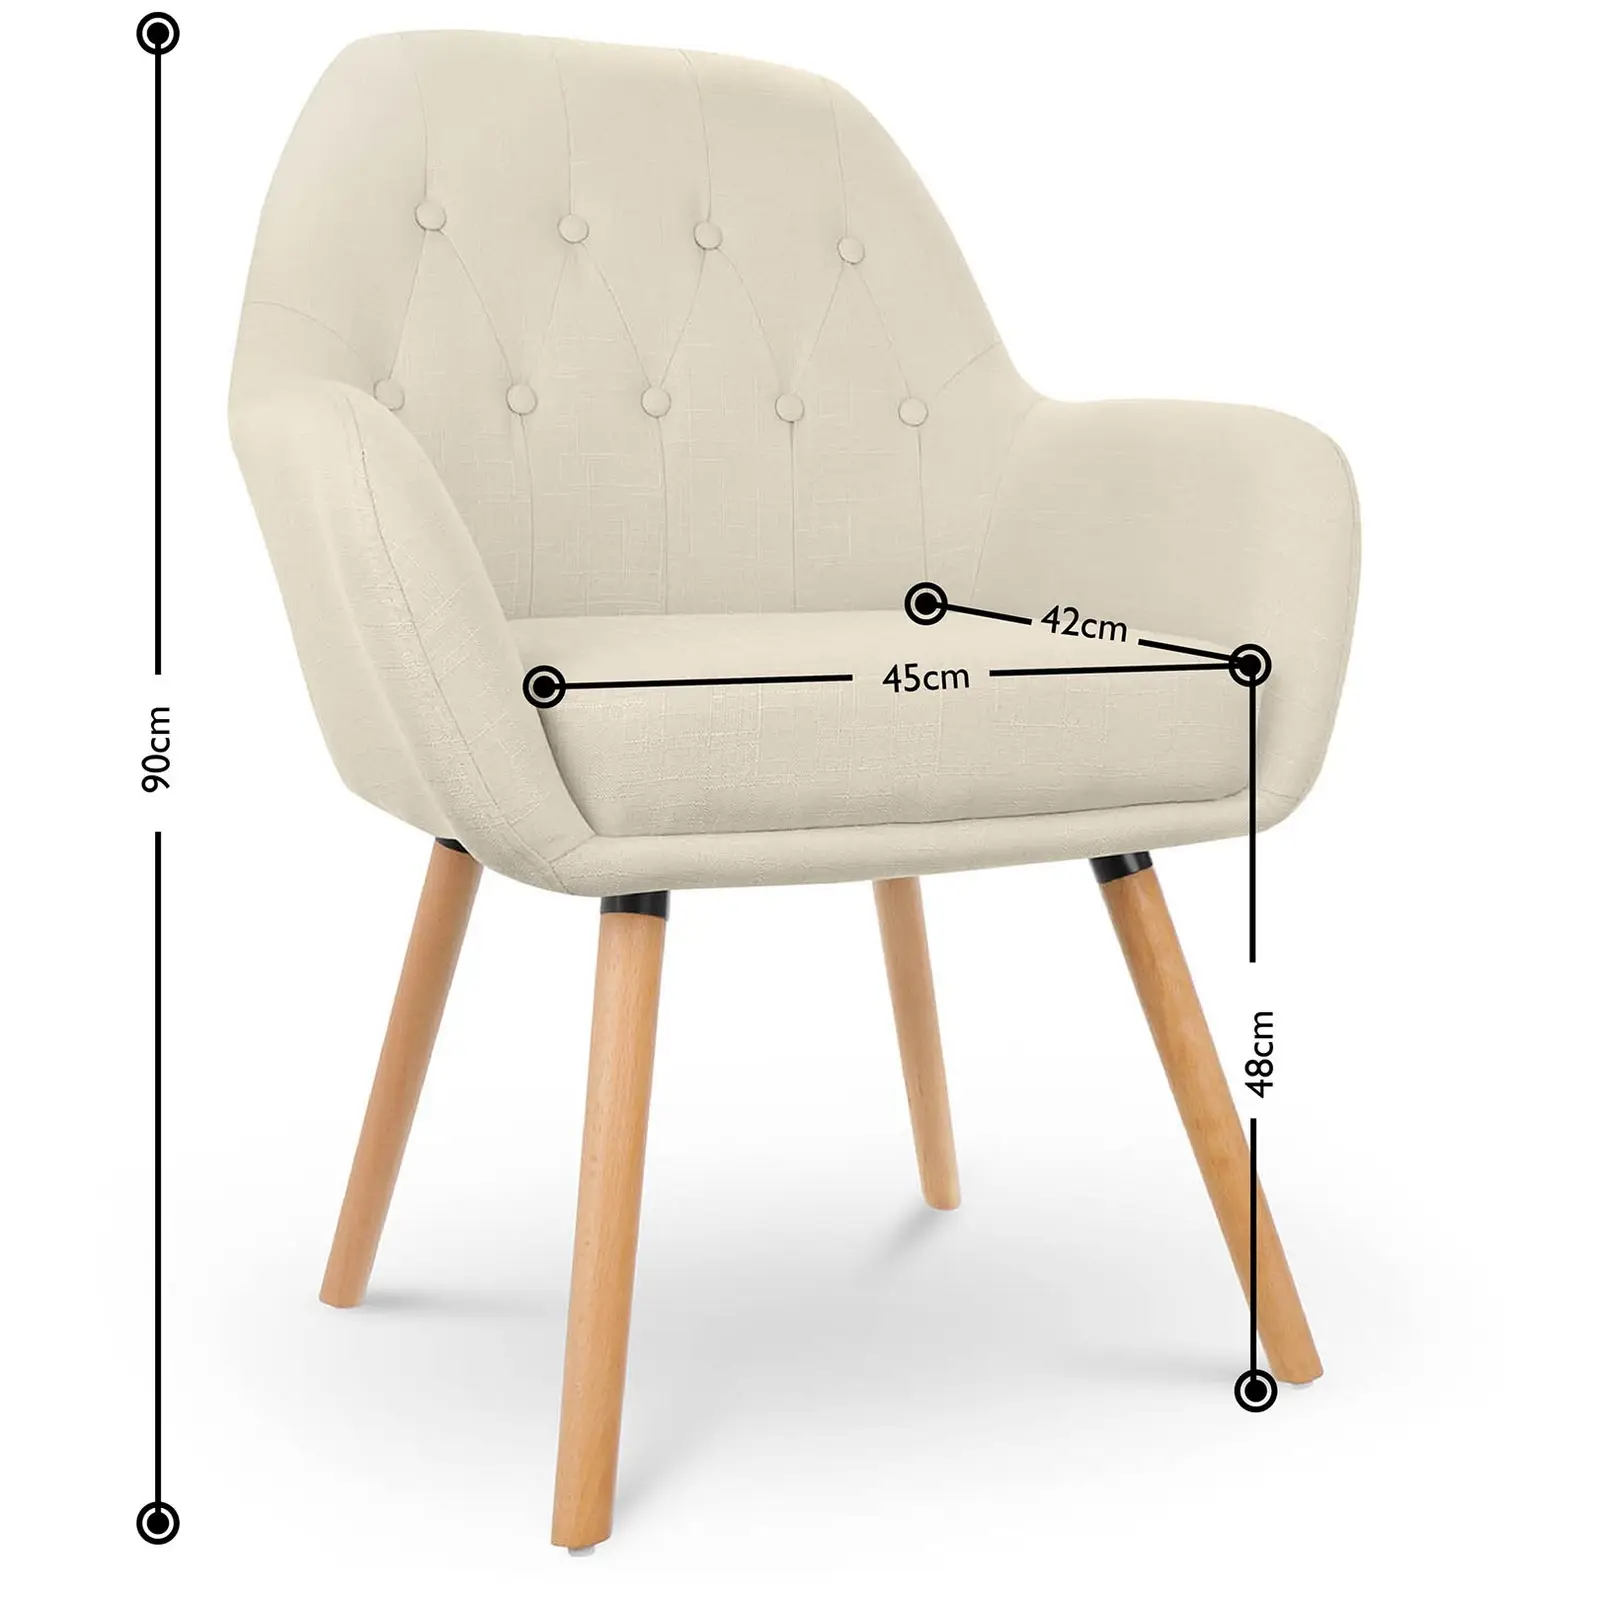 Chaise en tissu - 150 kg max. - Surface d'assise de 45 x 42 cm - Coloris beige